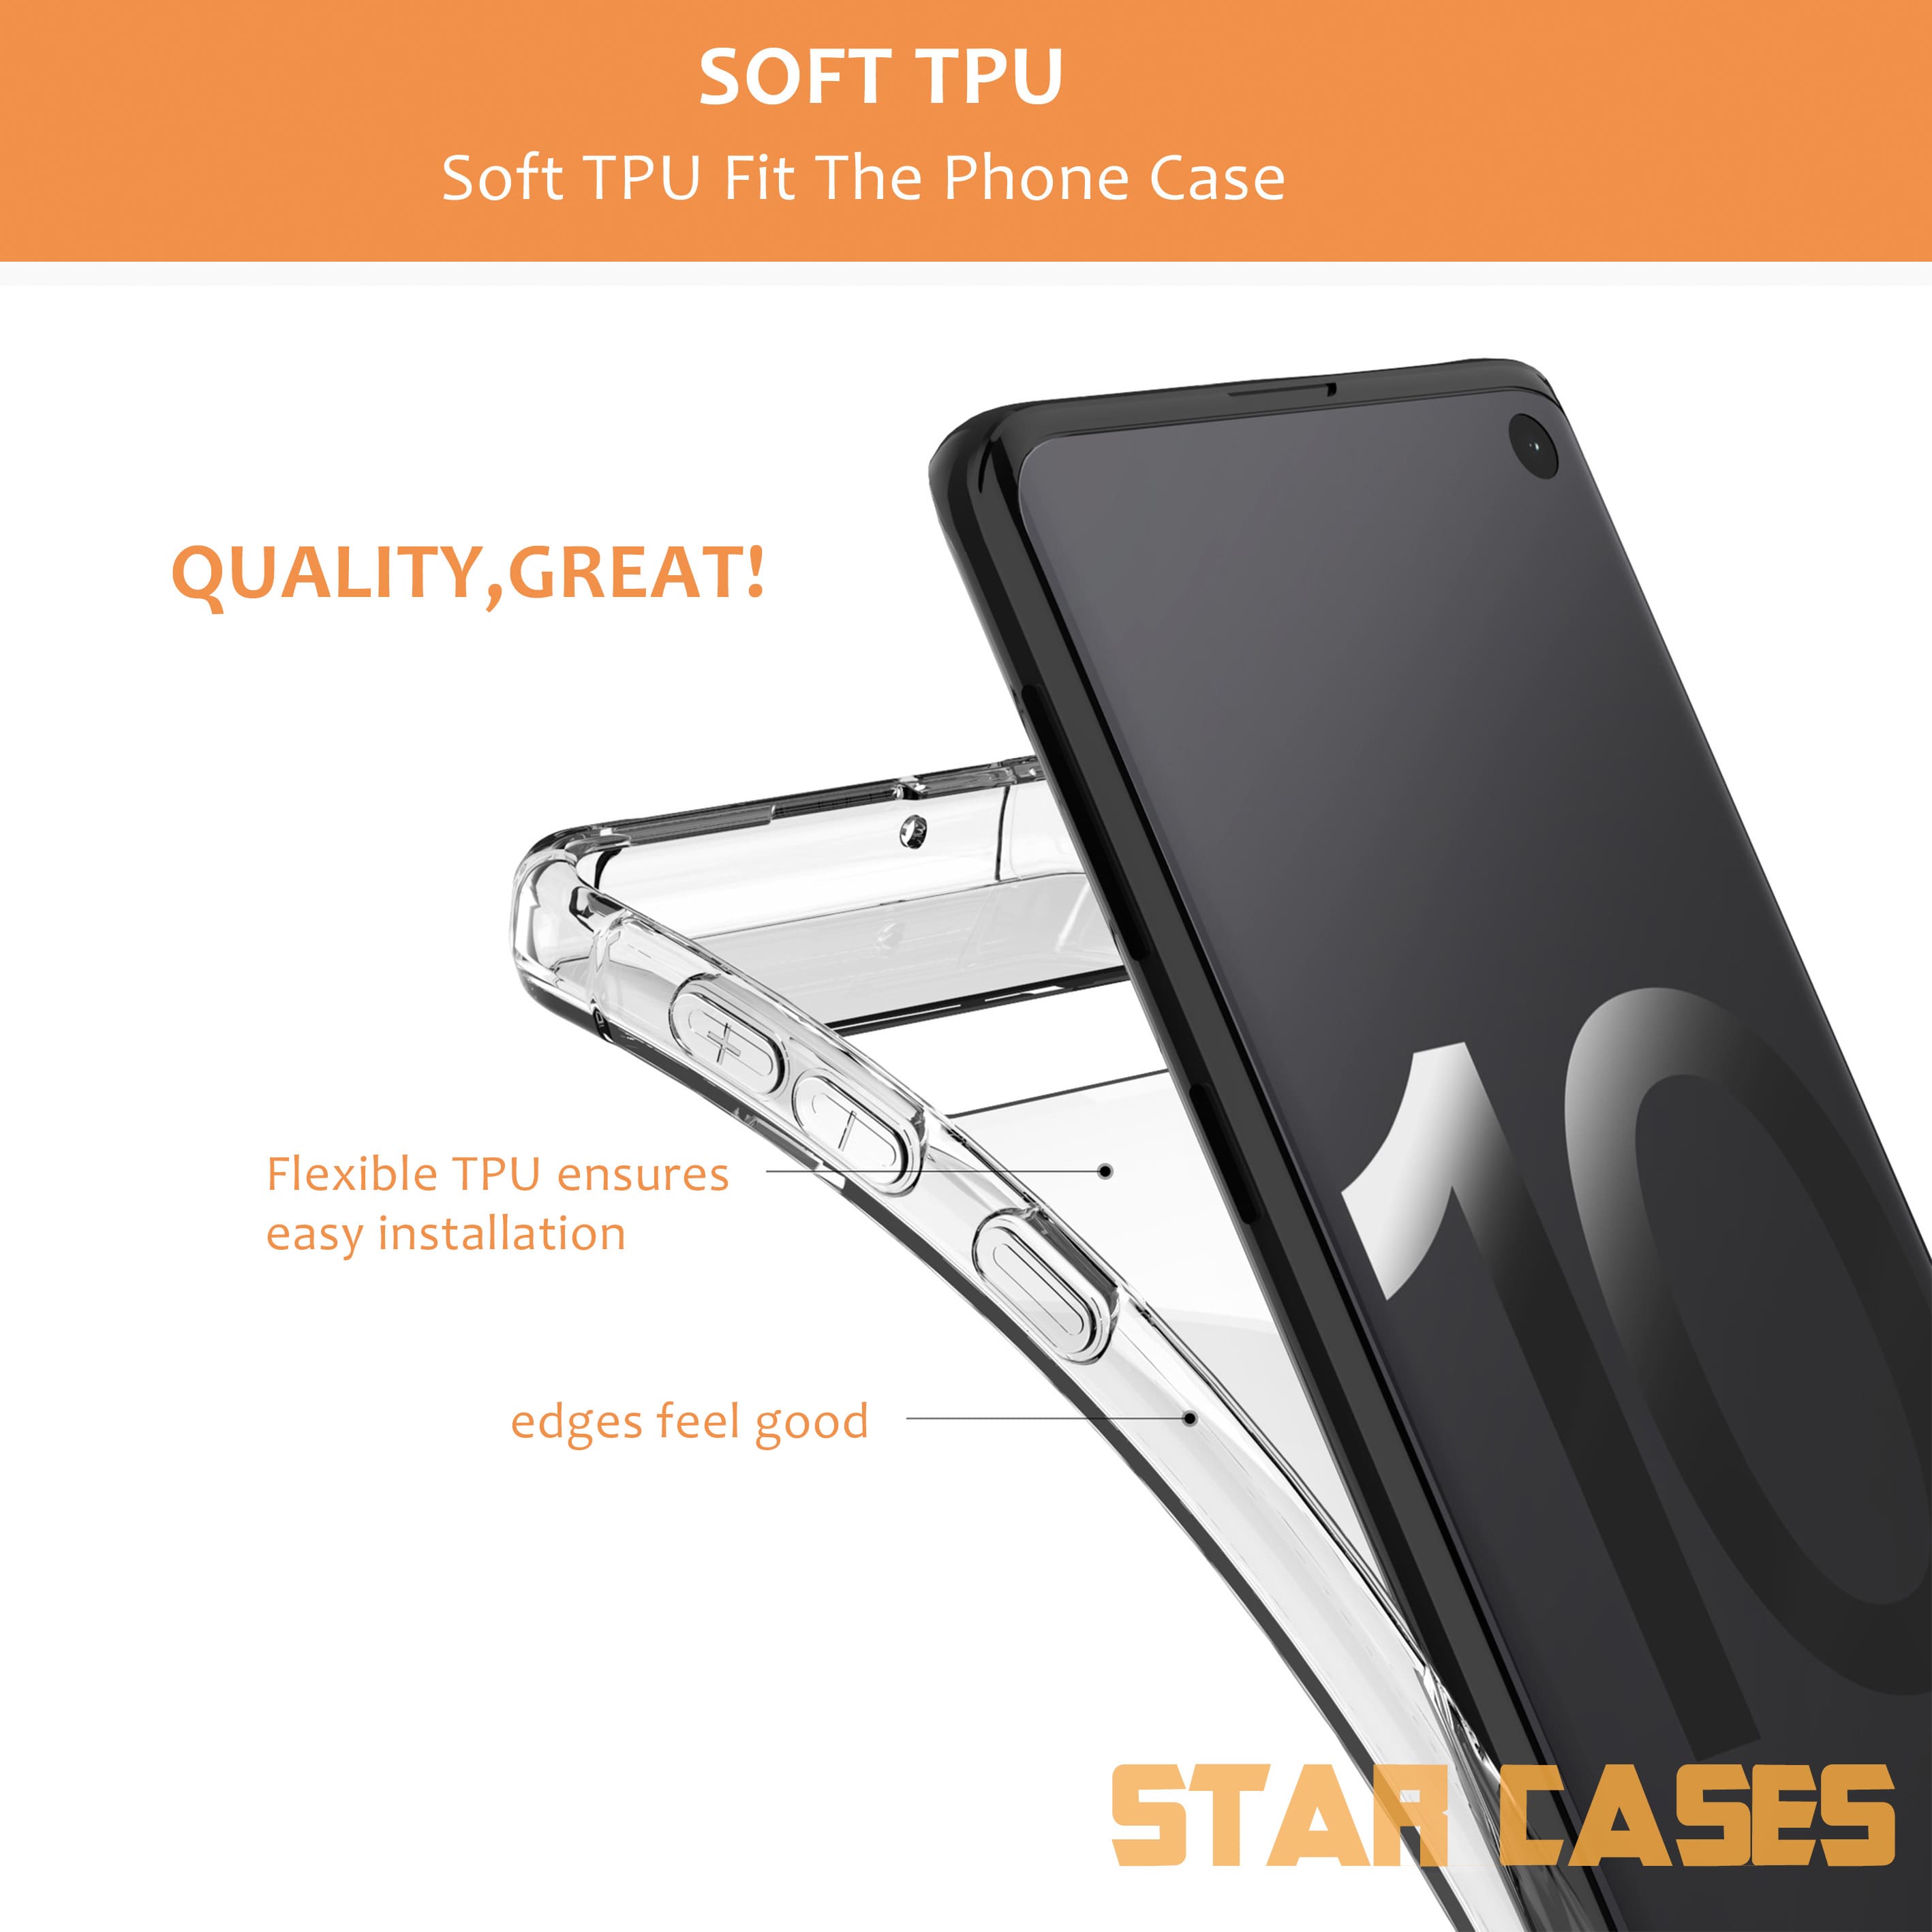 Samsung A22 Clear Soft Bumper Case